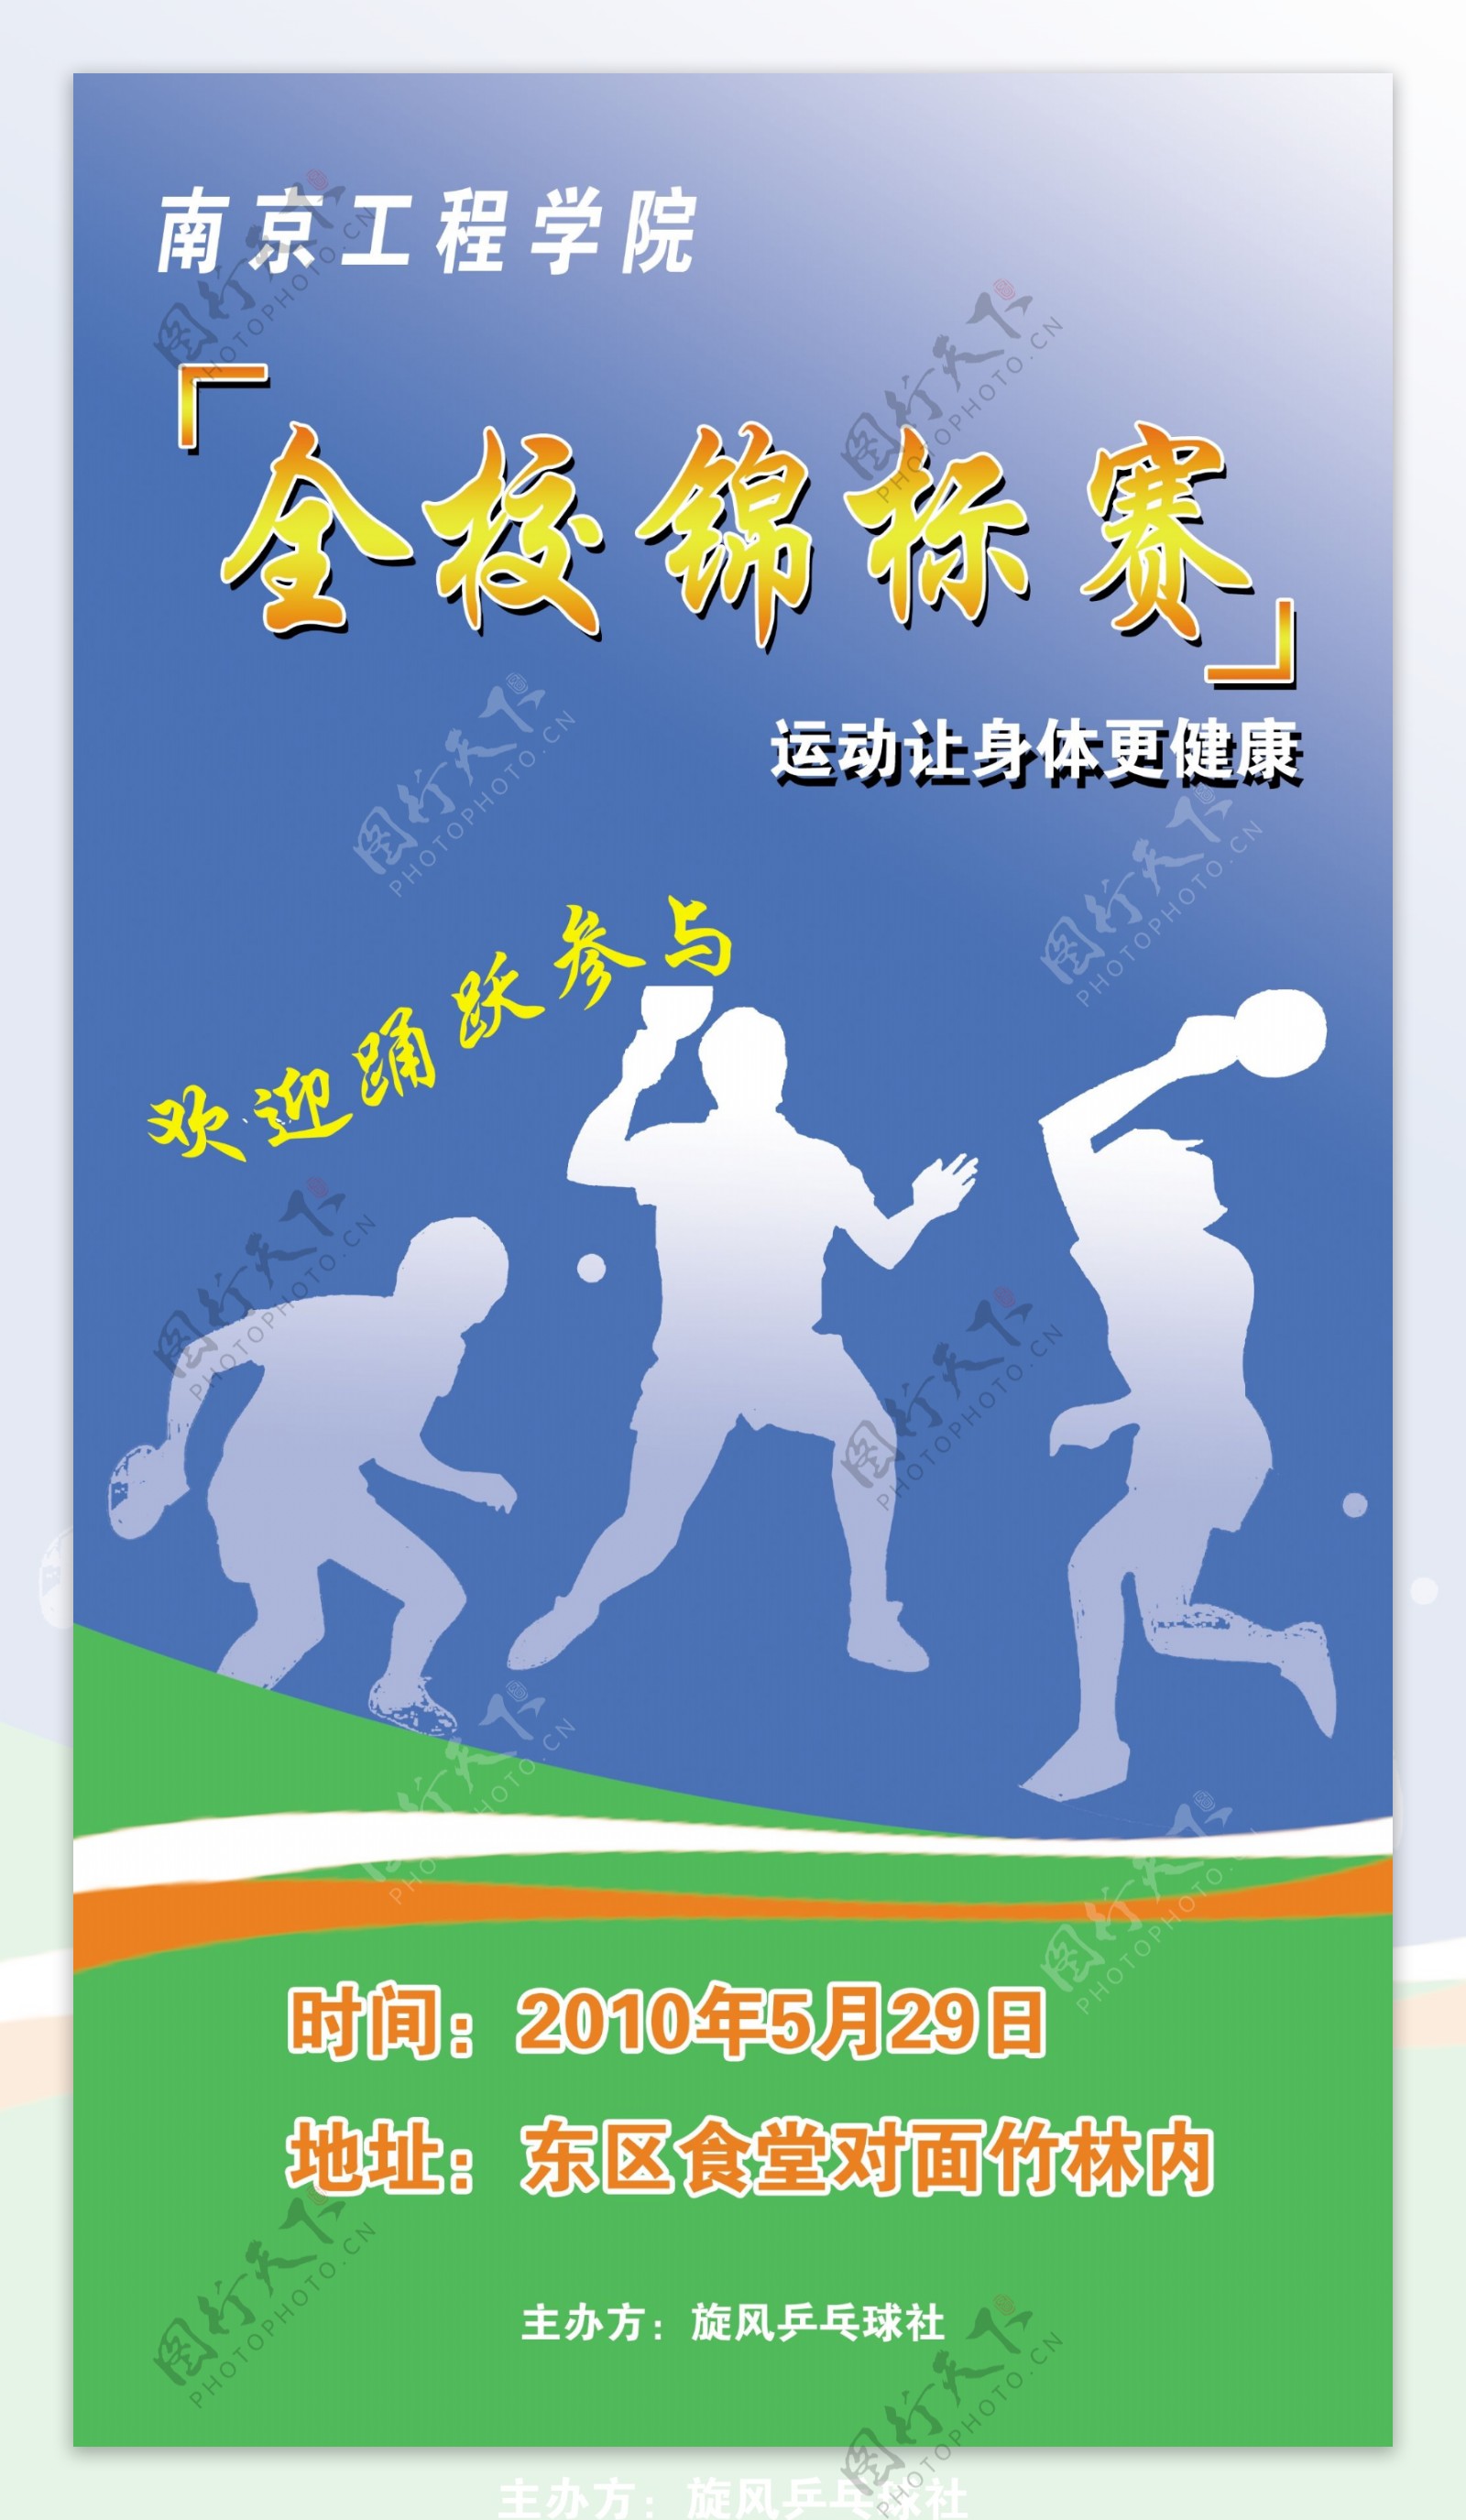 兵乓球锦标赛海报图片